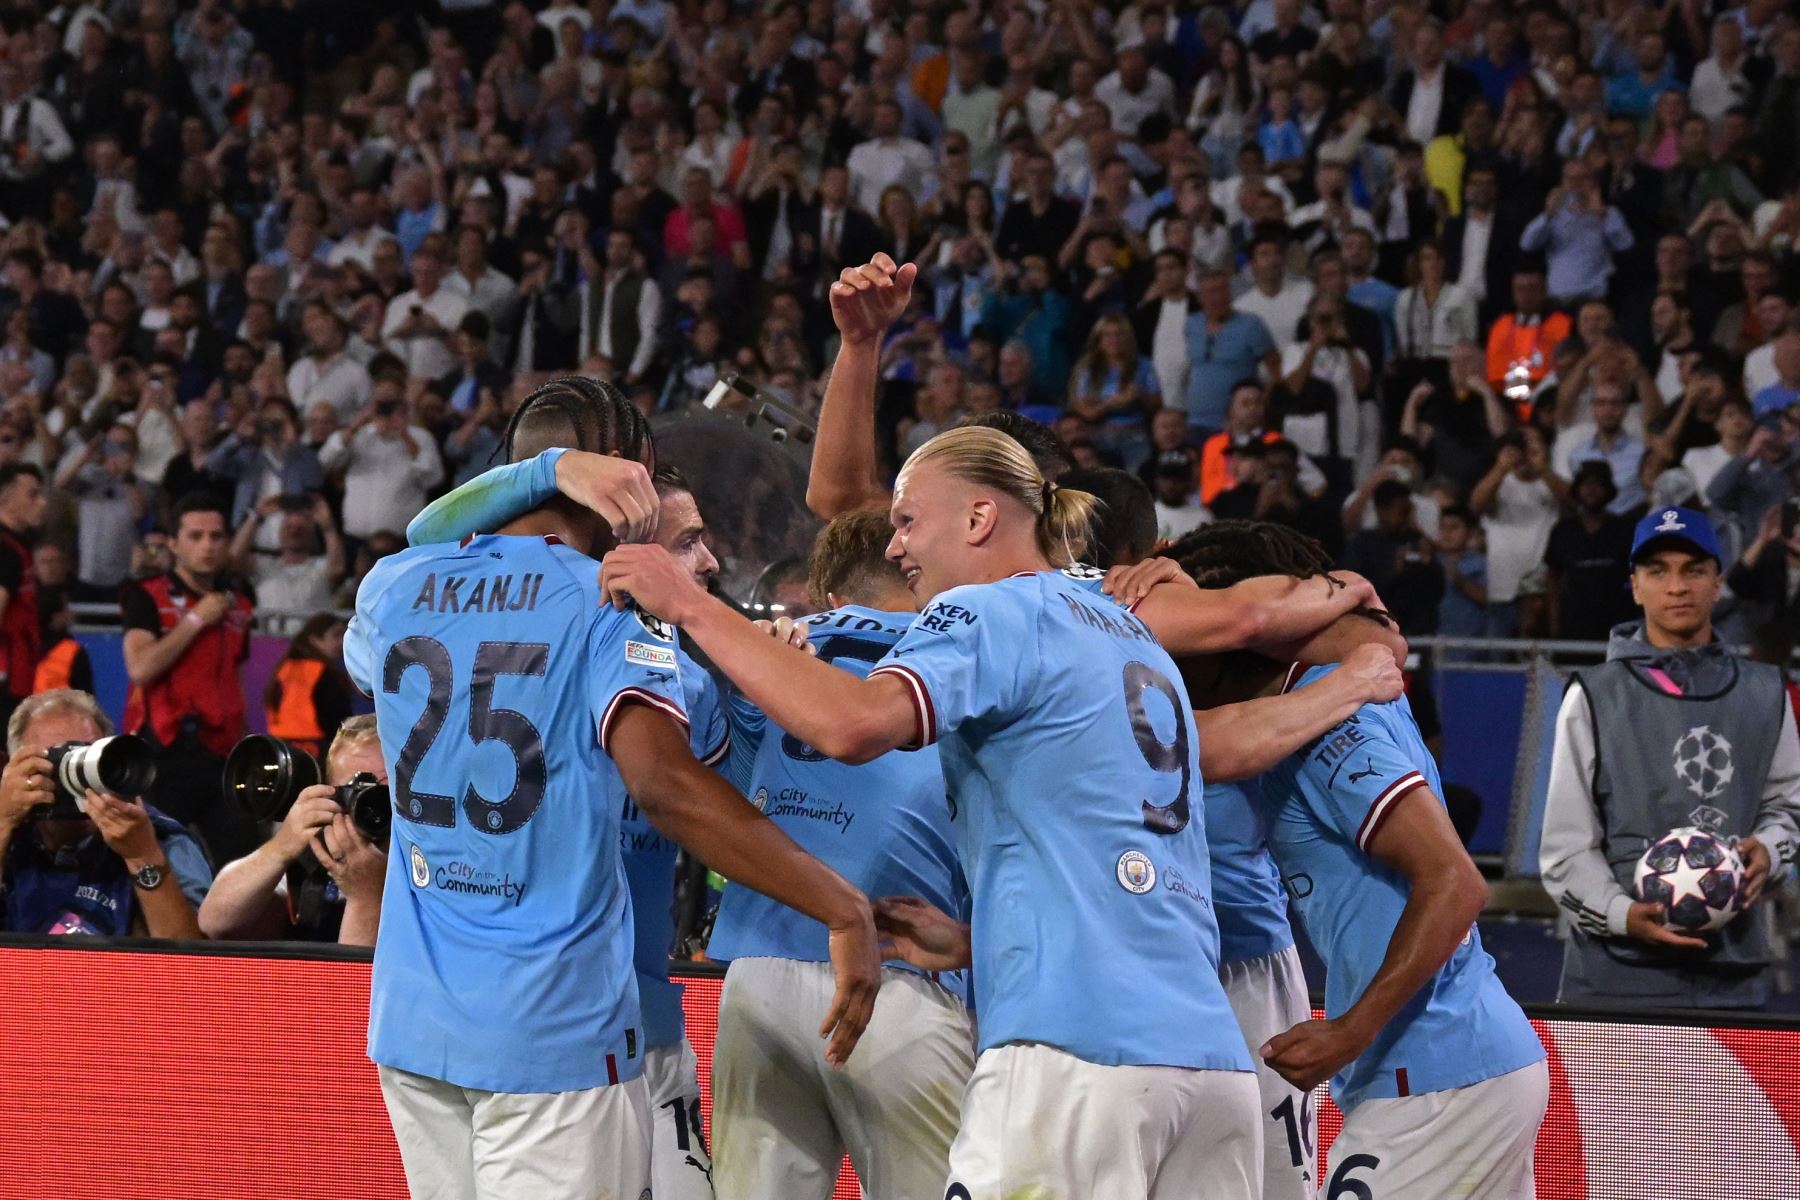 Los jugadores del Manchester City celebran marcar su primer gol durante el partido de fútbol final de la UEFA Champions League entre el Inter de Milán y el Manchester City en el Estadio Olímpico Ataturk en Estambul.
Foto: AFP